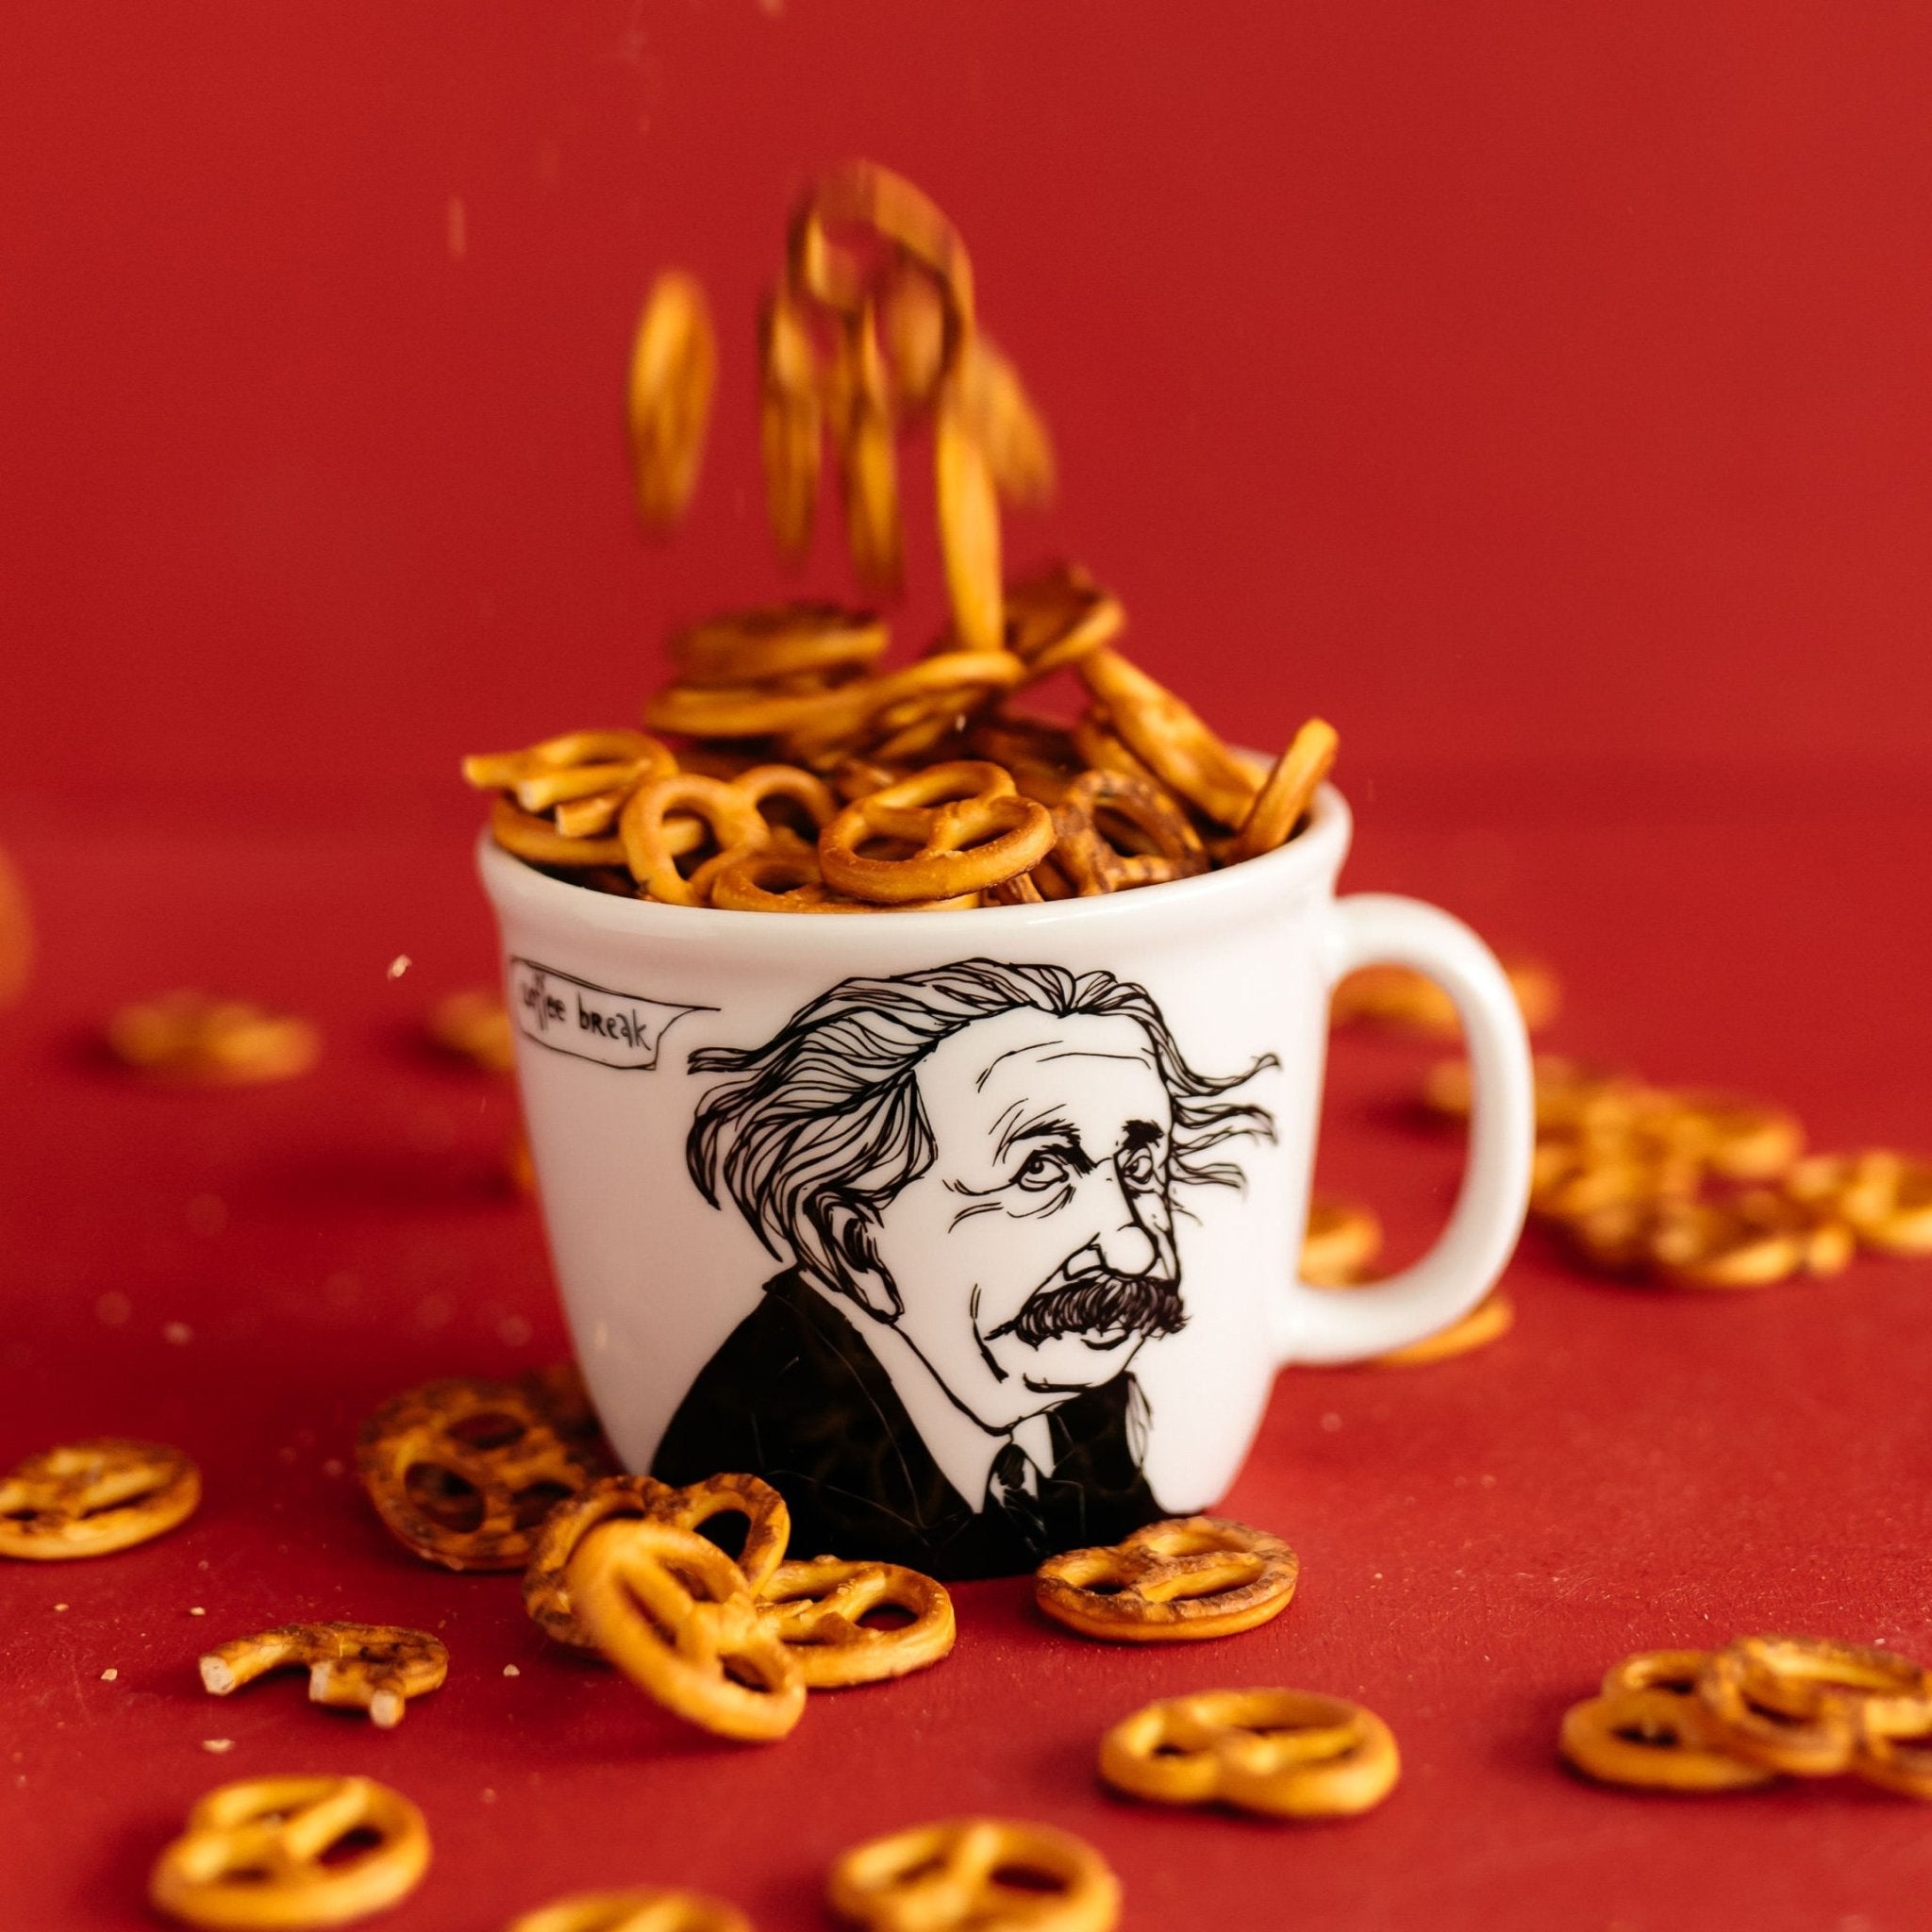 Porcelain cup inspired by Albert Einstein with pretzels